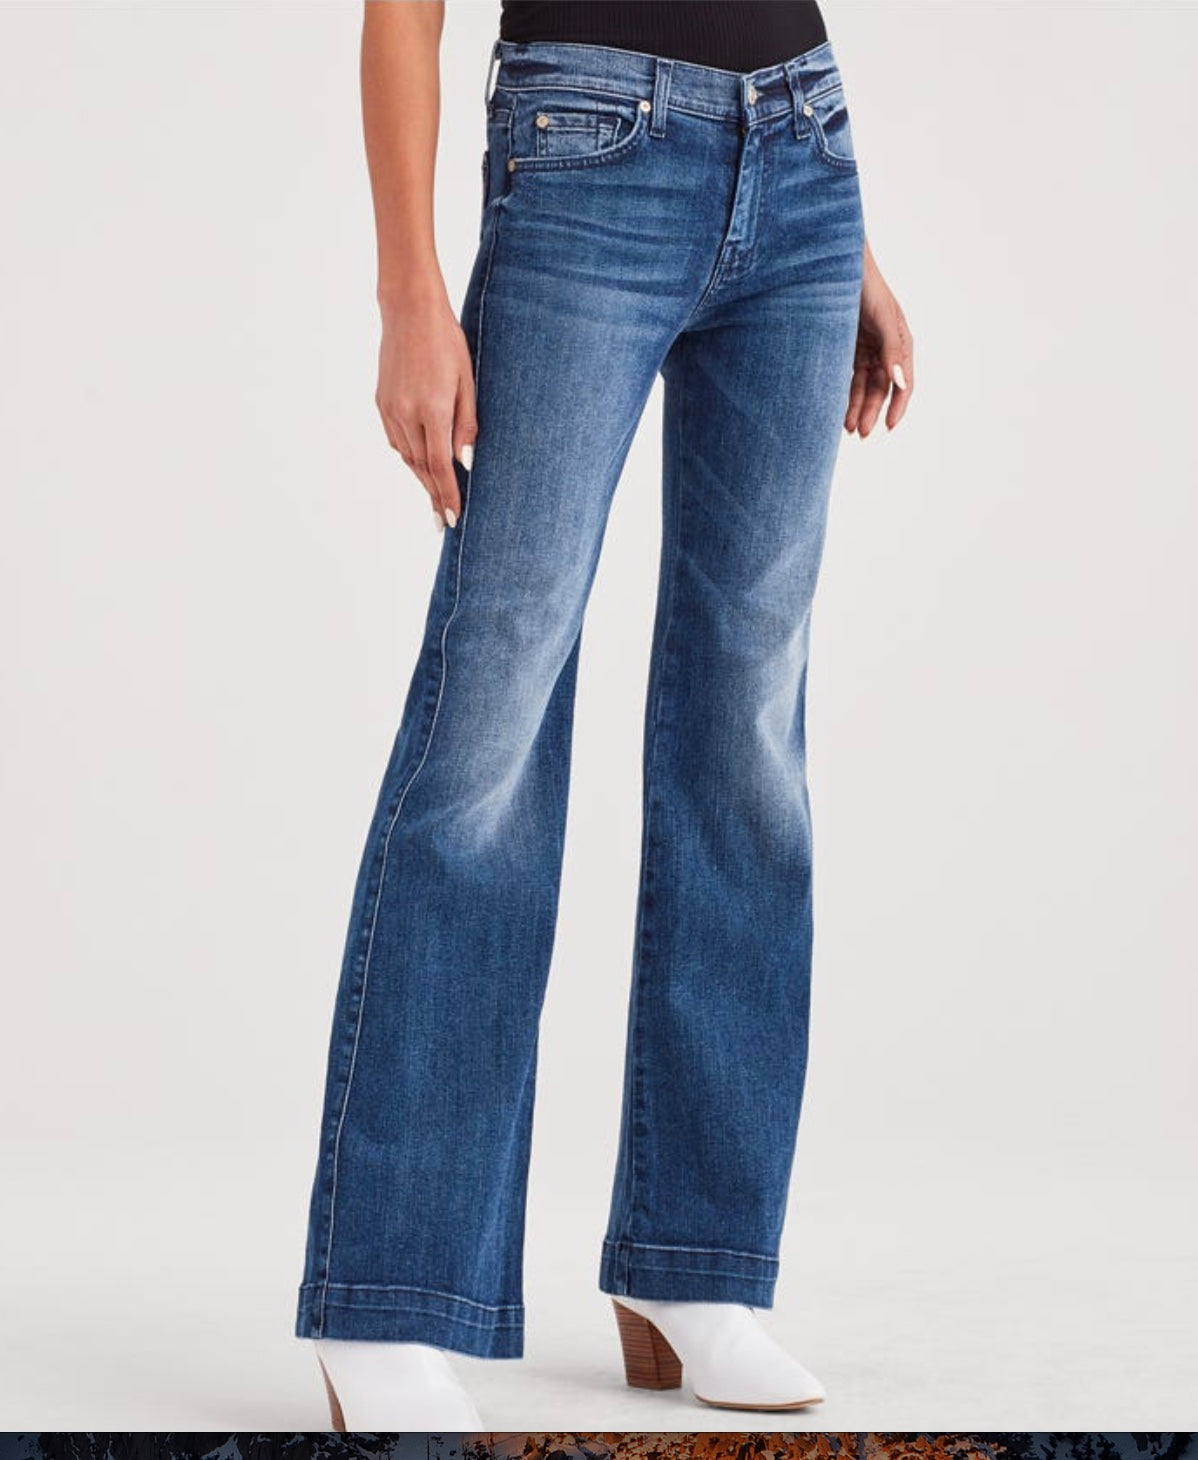 shein jeans women